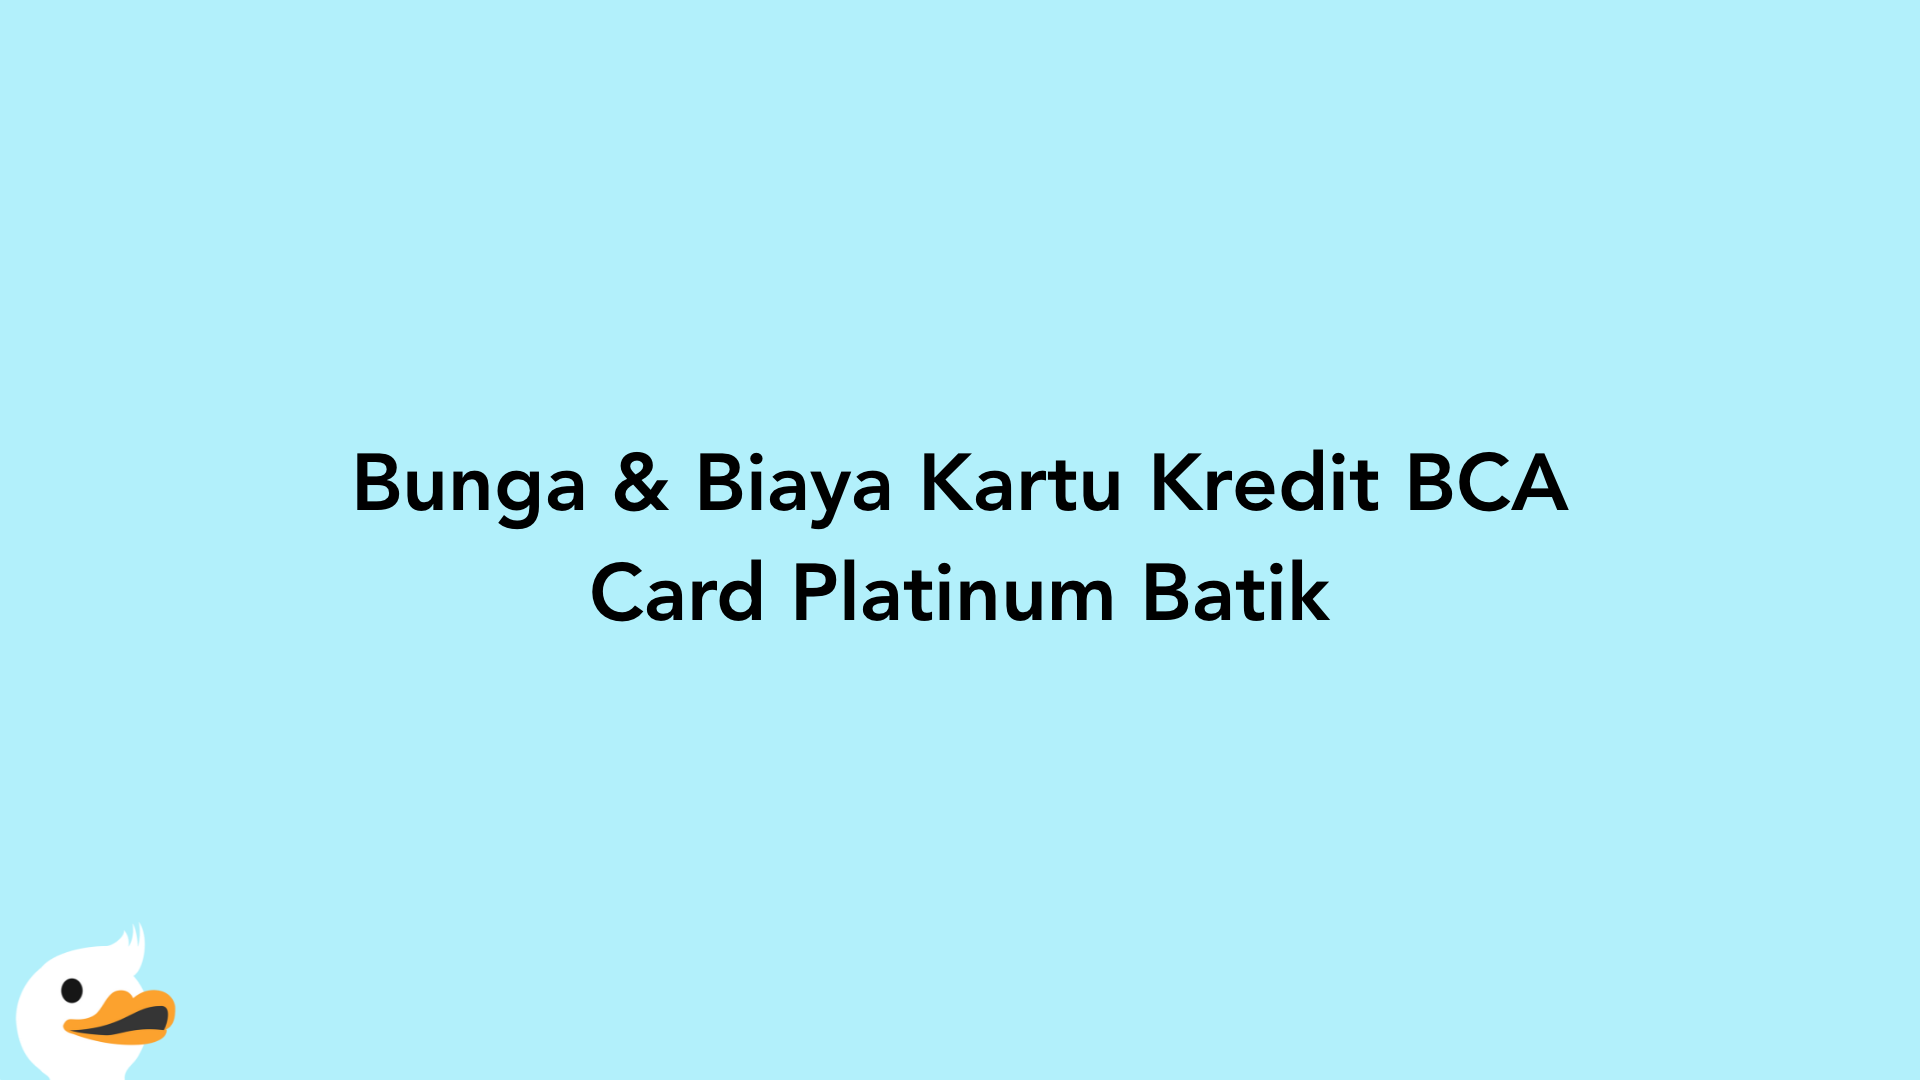 Bunga & Biaya Kartu Kredit BCA Card Platinum Batik